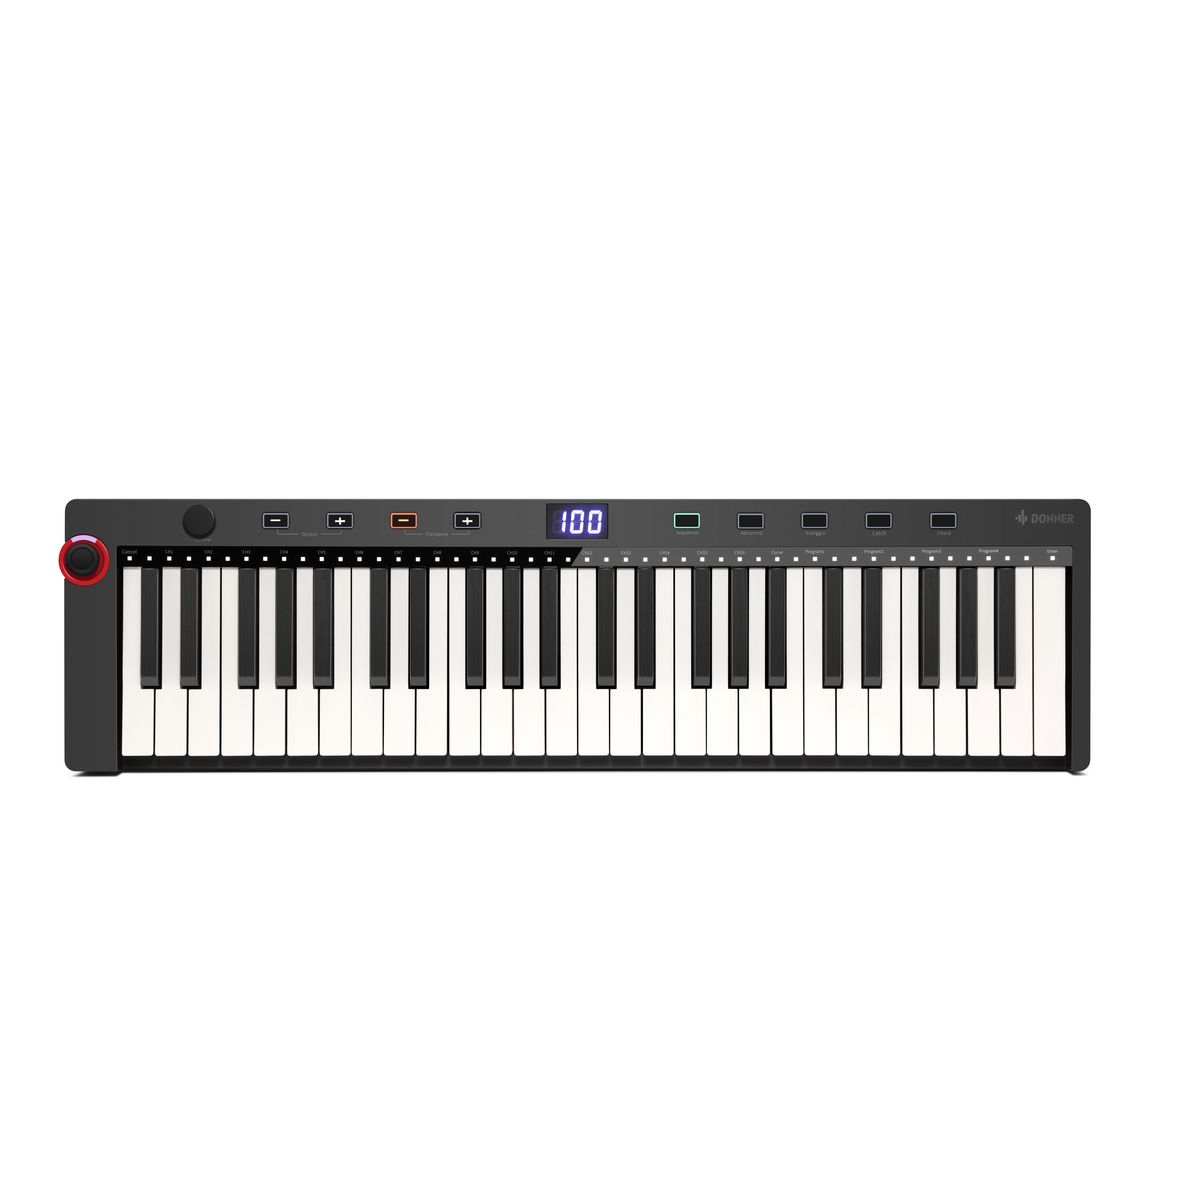 Donner Music N-49 Midi клавиатура, 49 клавиш